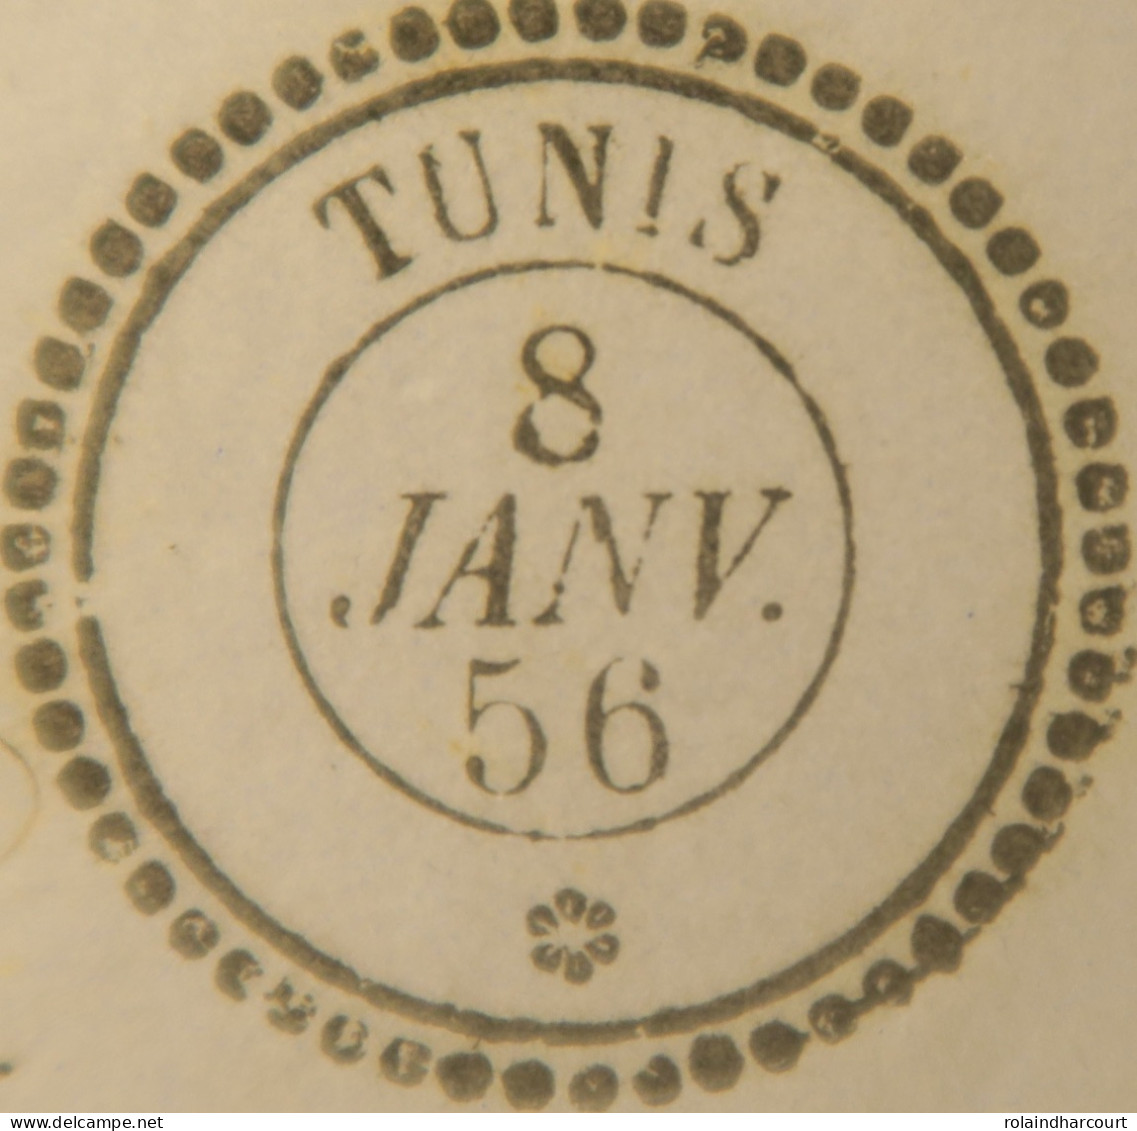 A550 - POSTE MARITIME - LETTRE (LAC) TUNIS (TUNISIE) 8 JANVIER 1856 à MARSEILLE (via BÔNE) - Poste Maritime